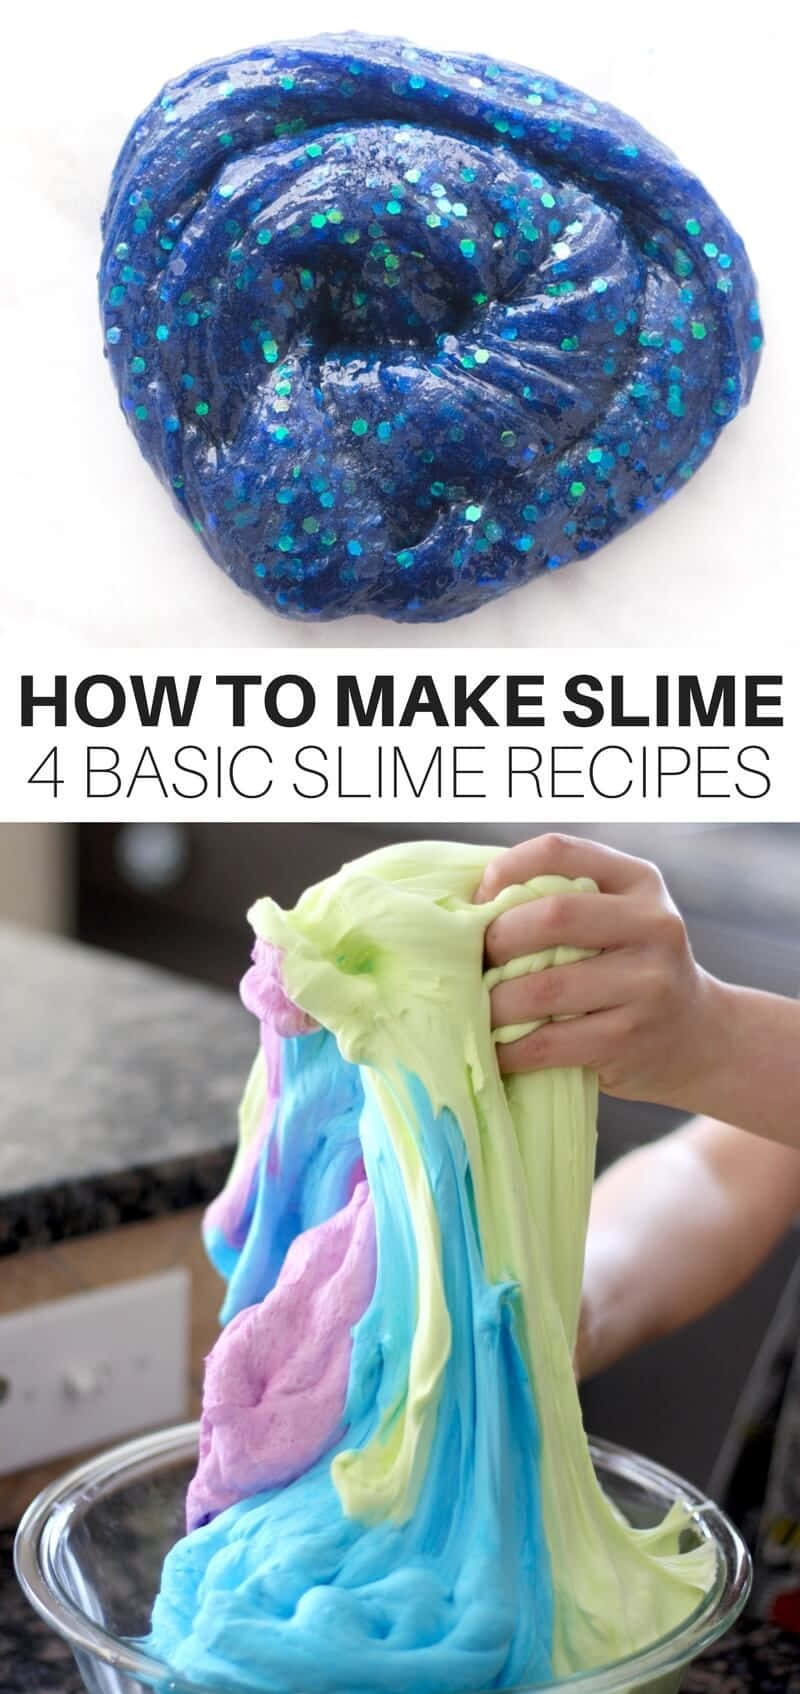 Cómohacer Slime: 4 Recetas Básicas De Slime